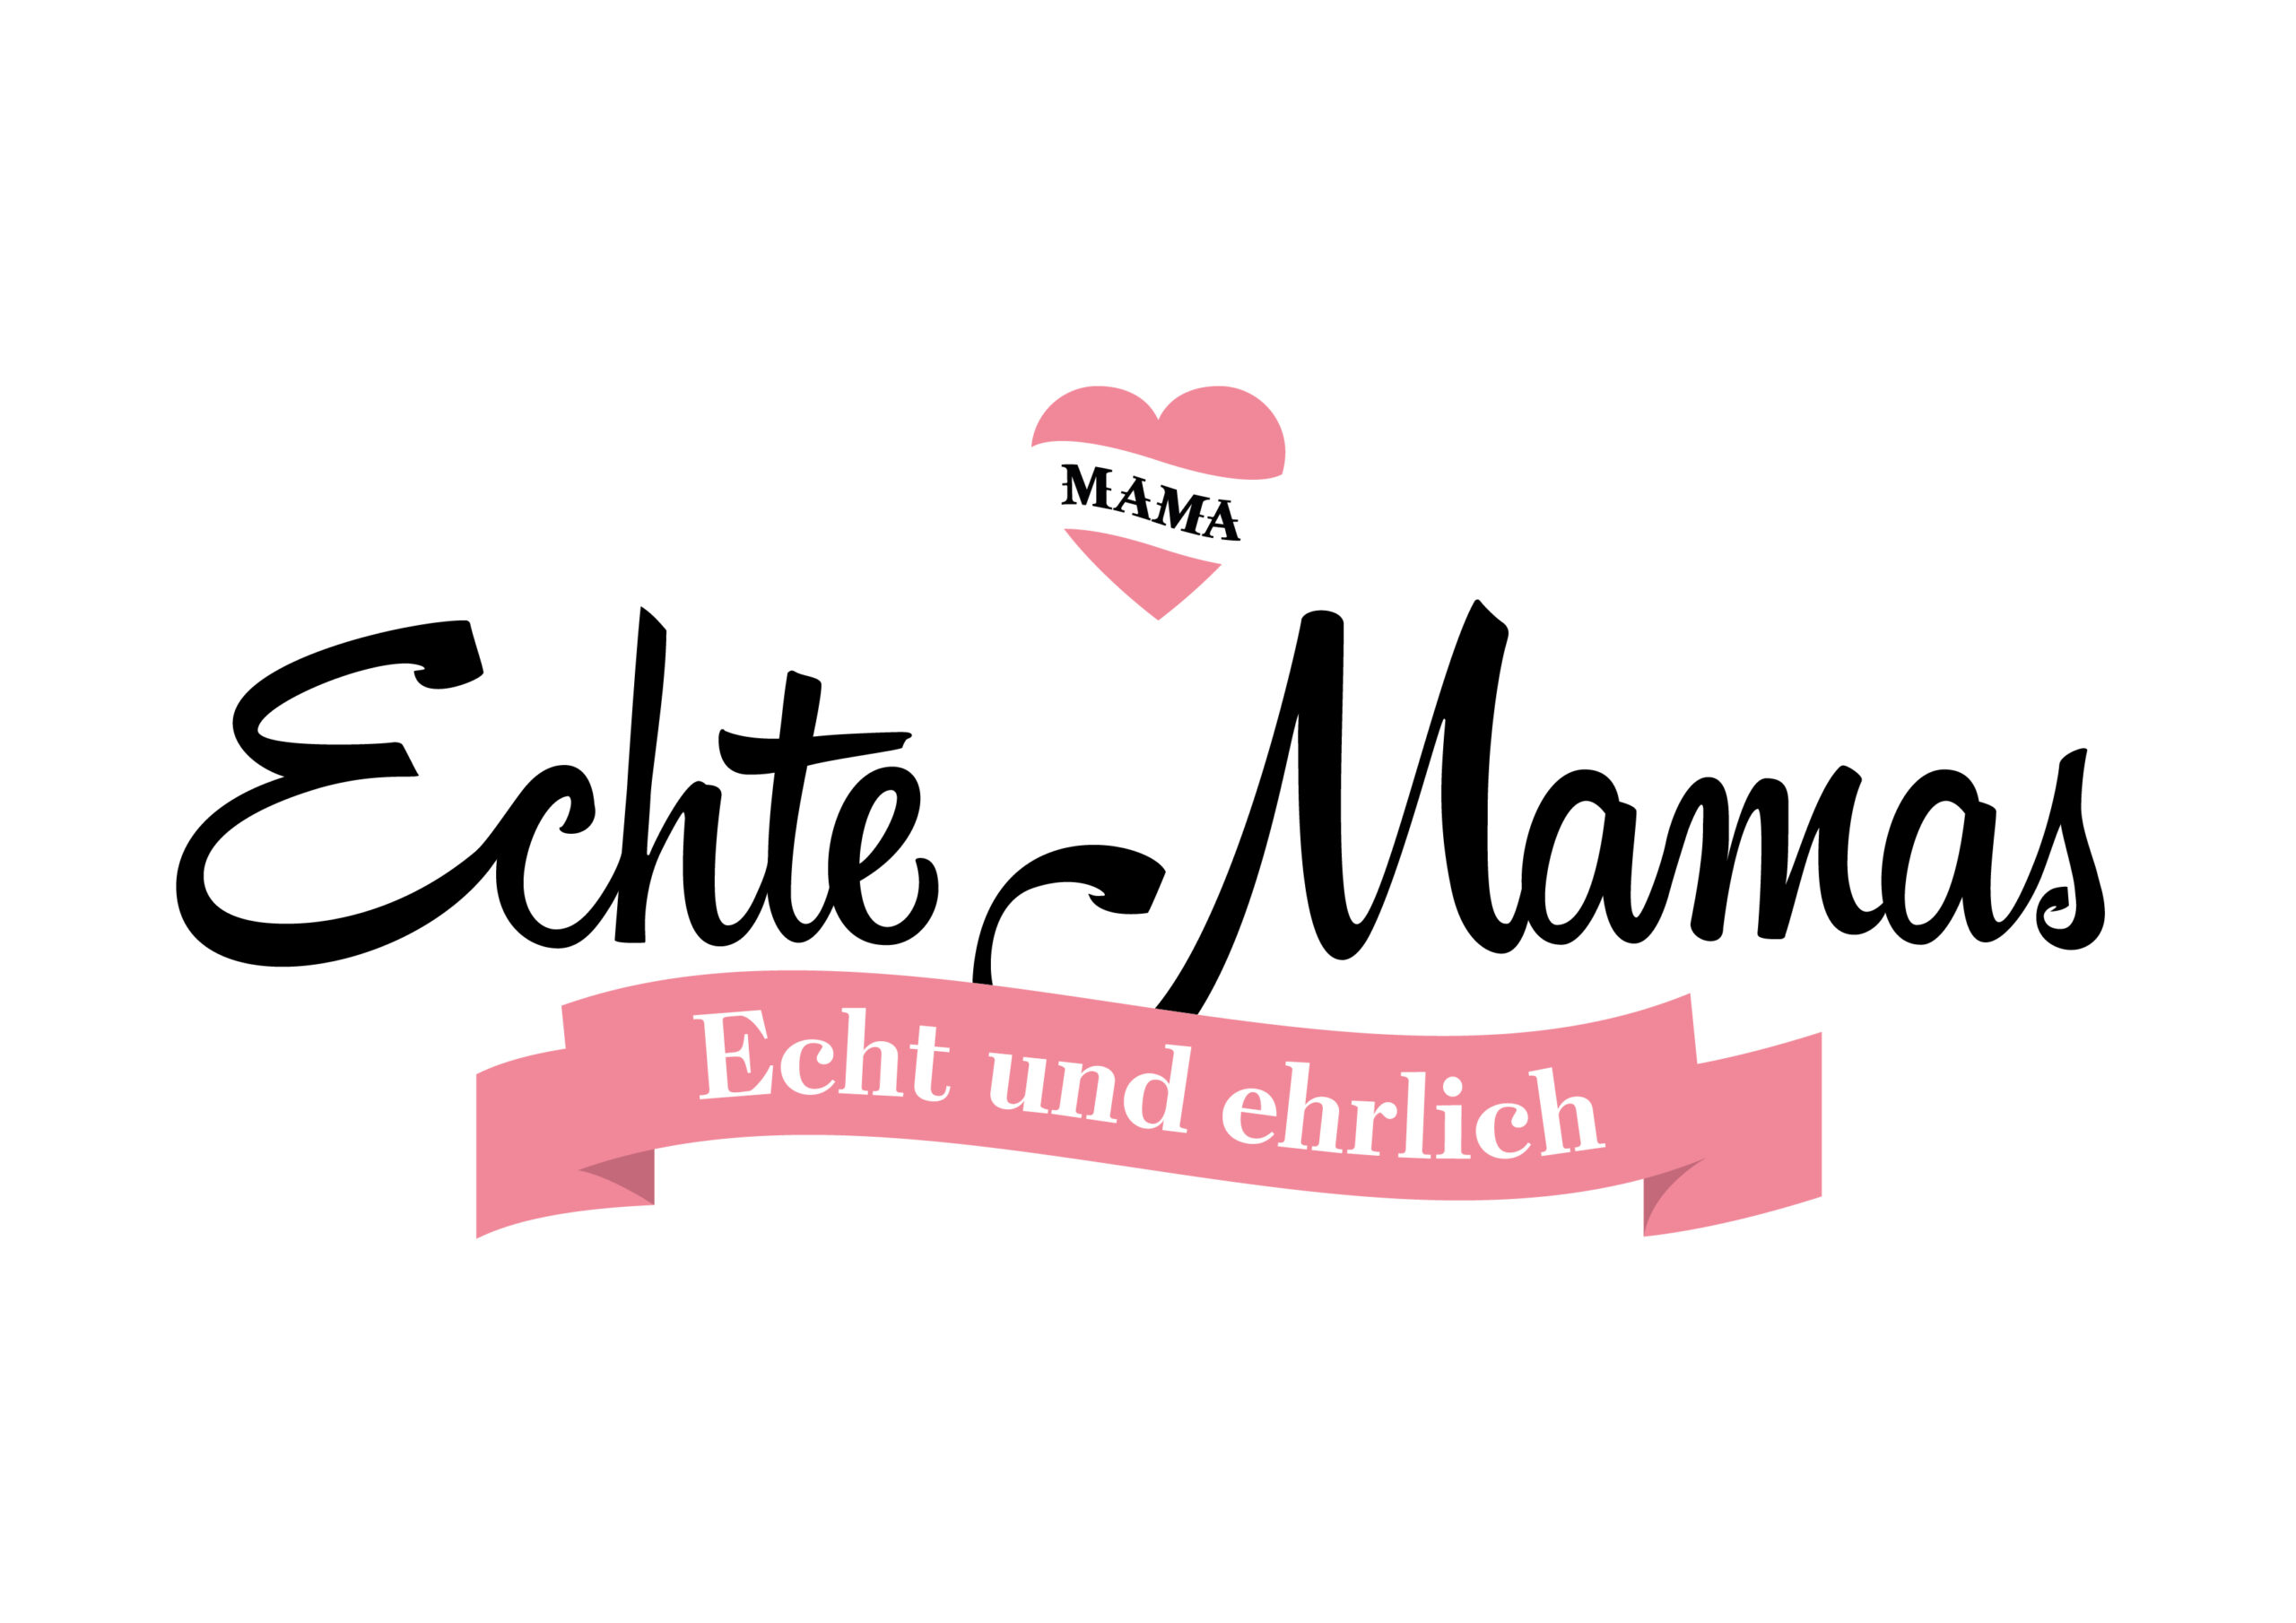 Echte-Mamas-Logo